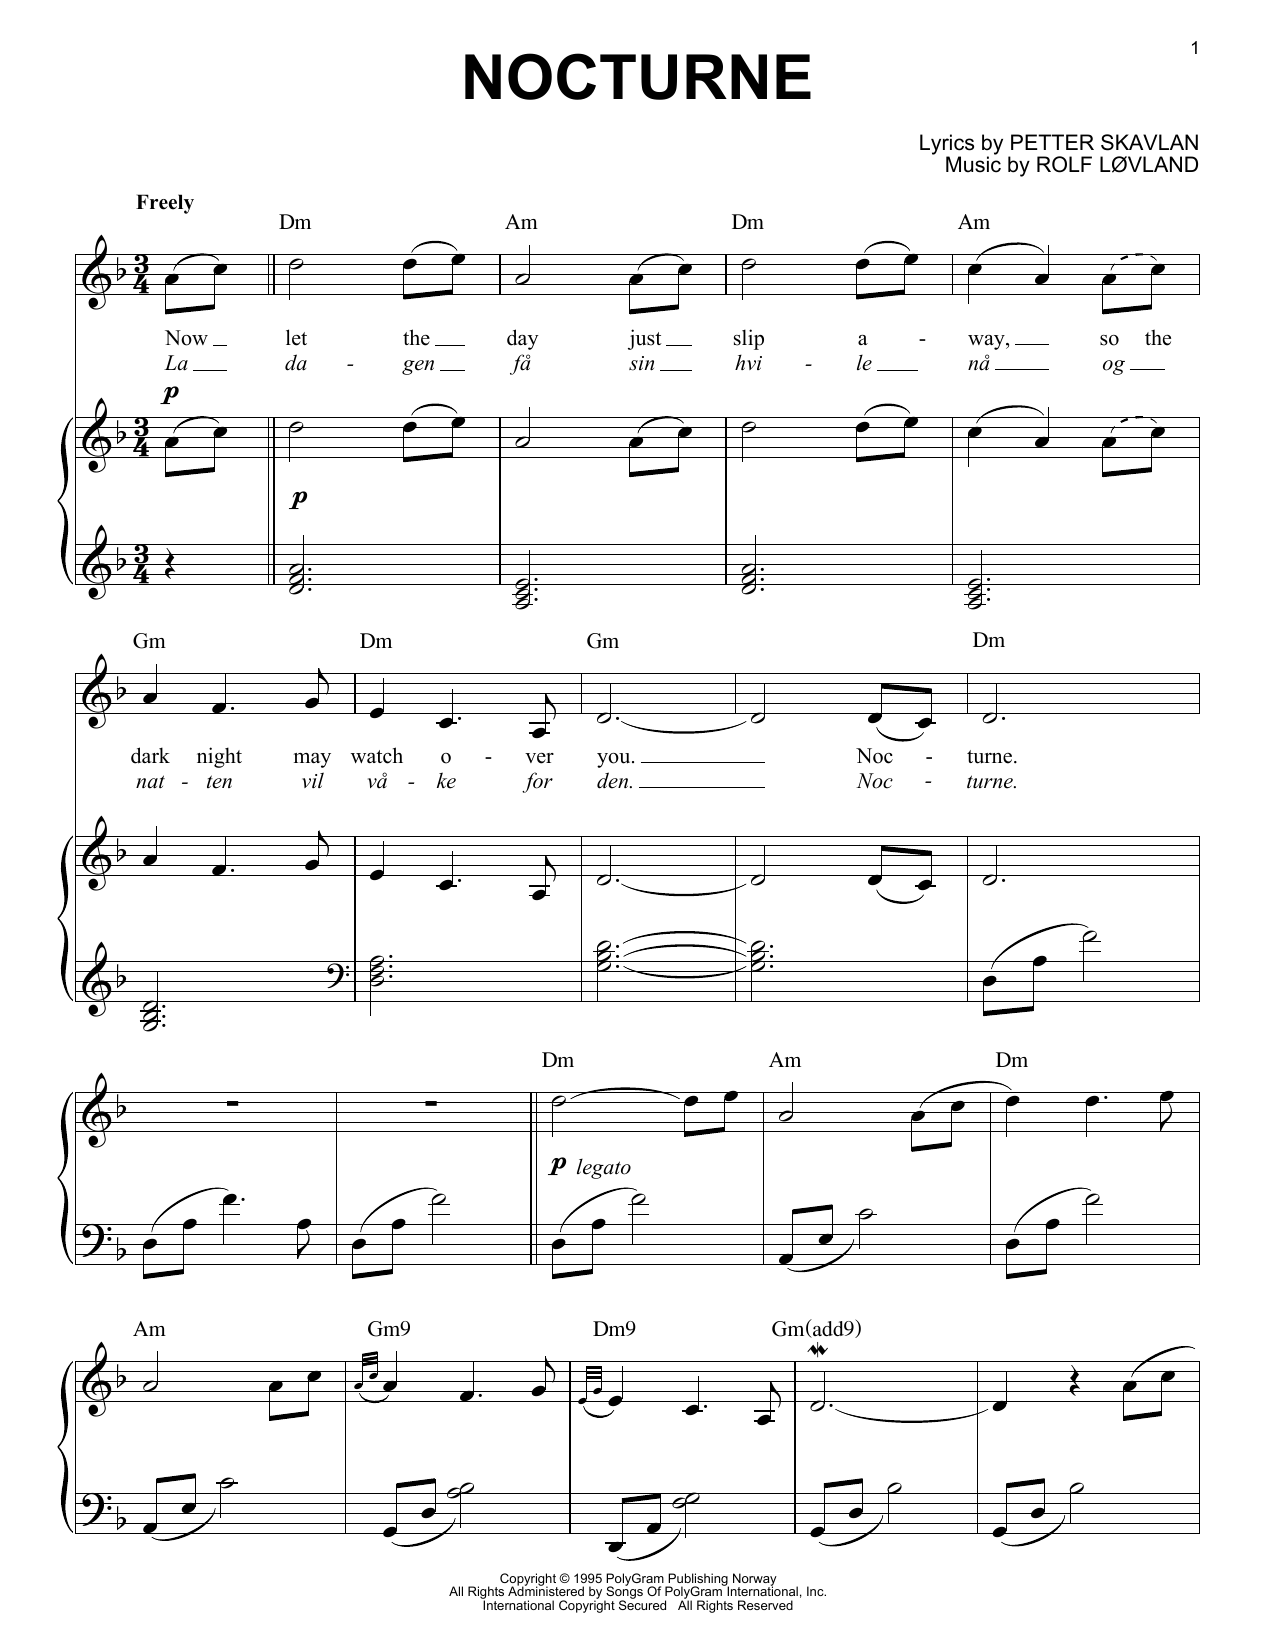 Secret Garden Nocturne Sheet Music Notes & Chords for Harp - Download or Print PDF